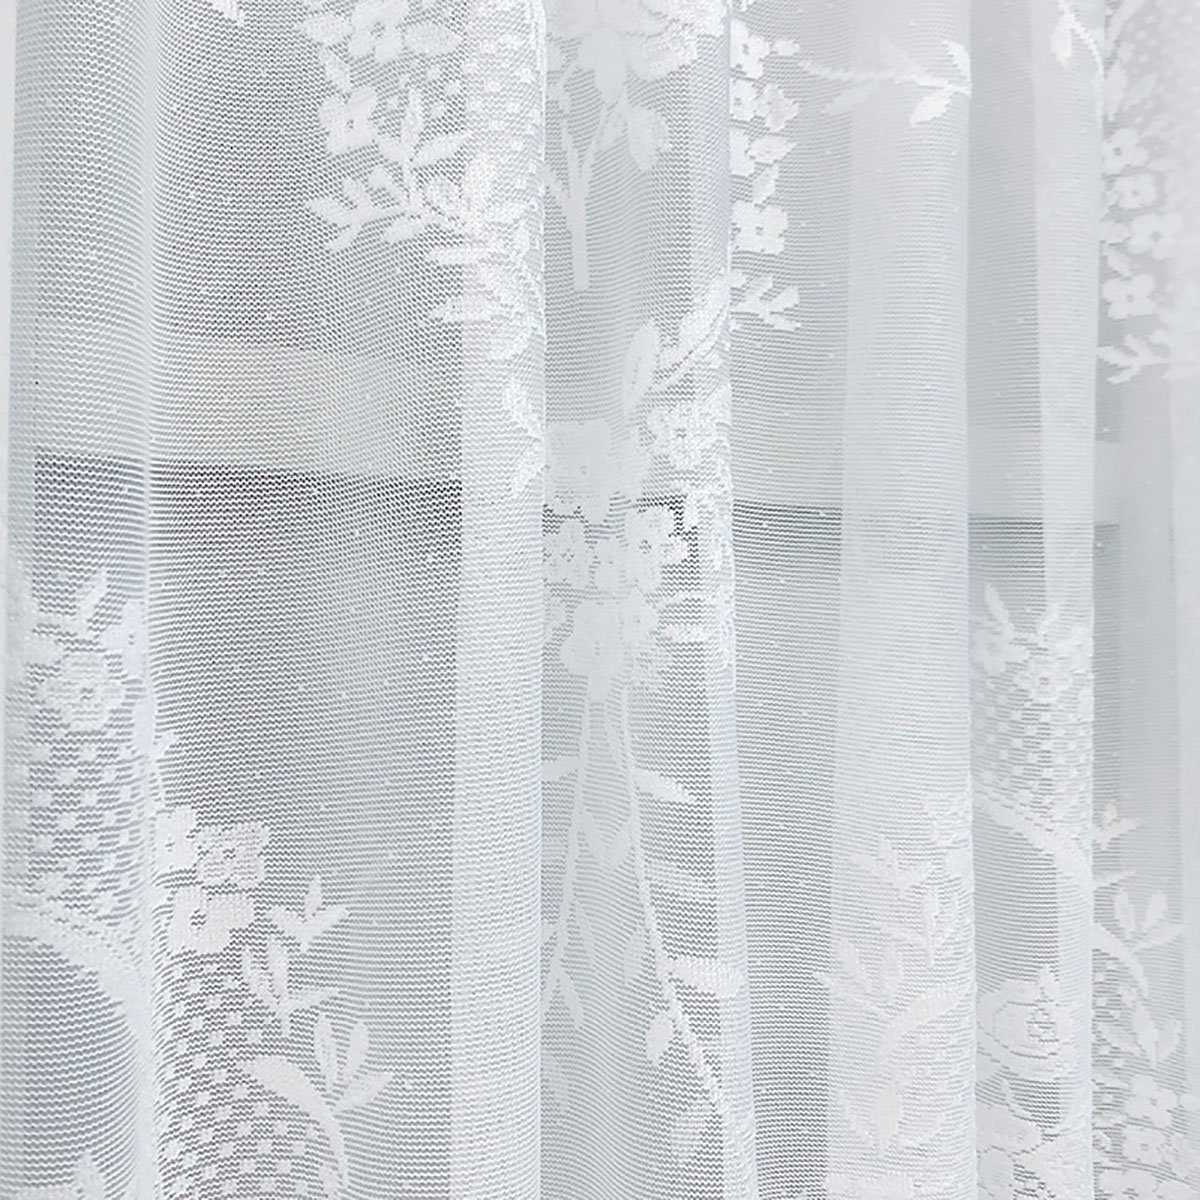 Vorhang, Kurzer Weiß cm Scheibengardine CTGtree 100*150 Scheiben gardine